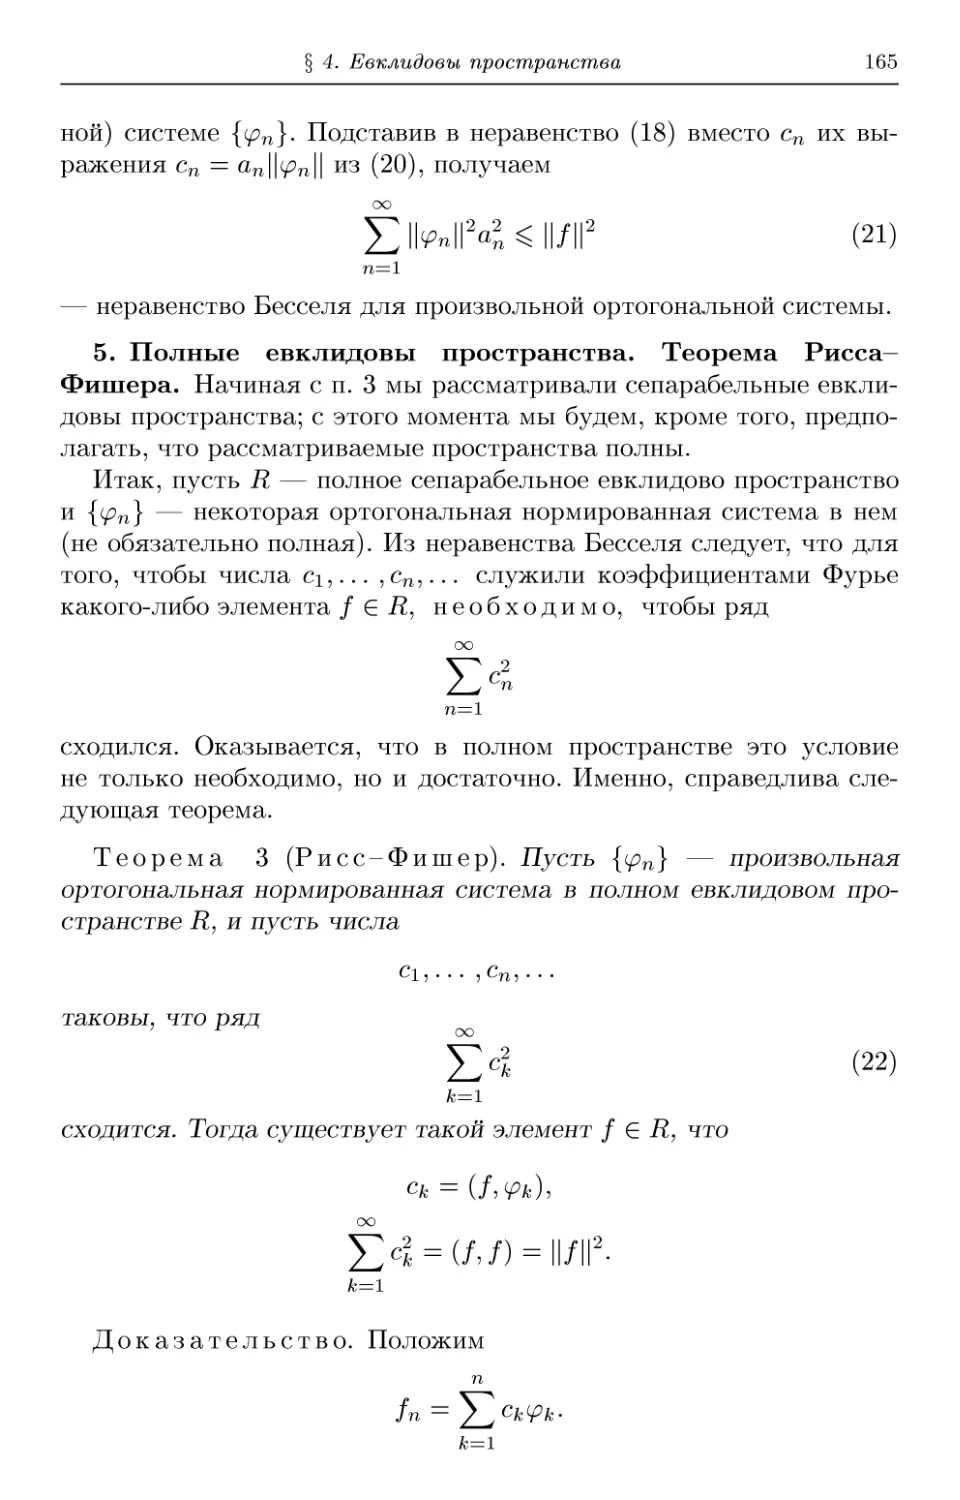 5. Полные евклидовы пространства. Теорема Рисса-Фишера